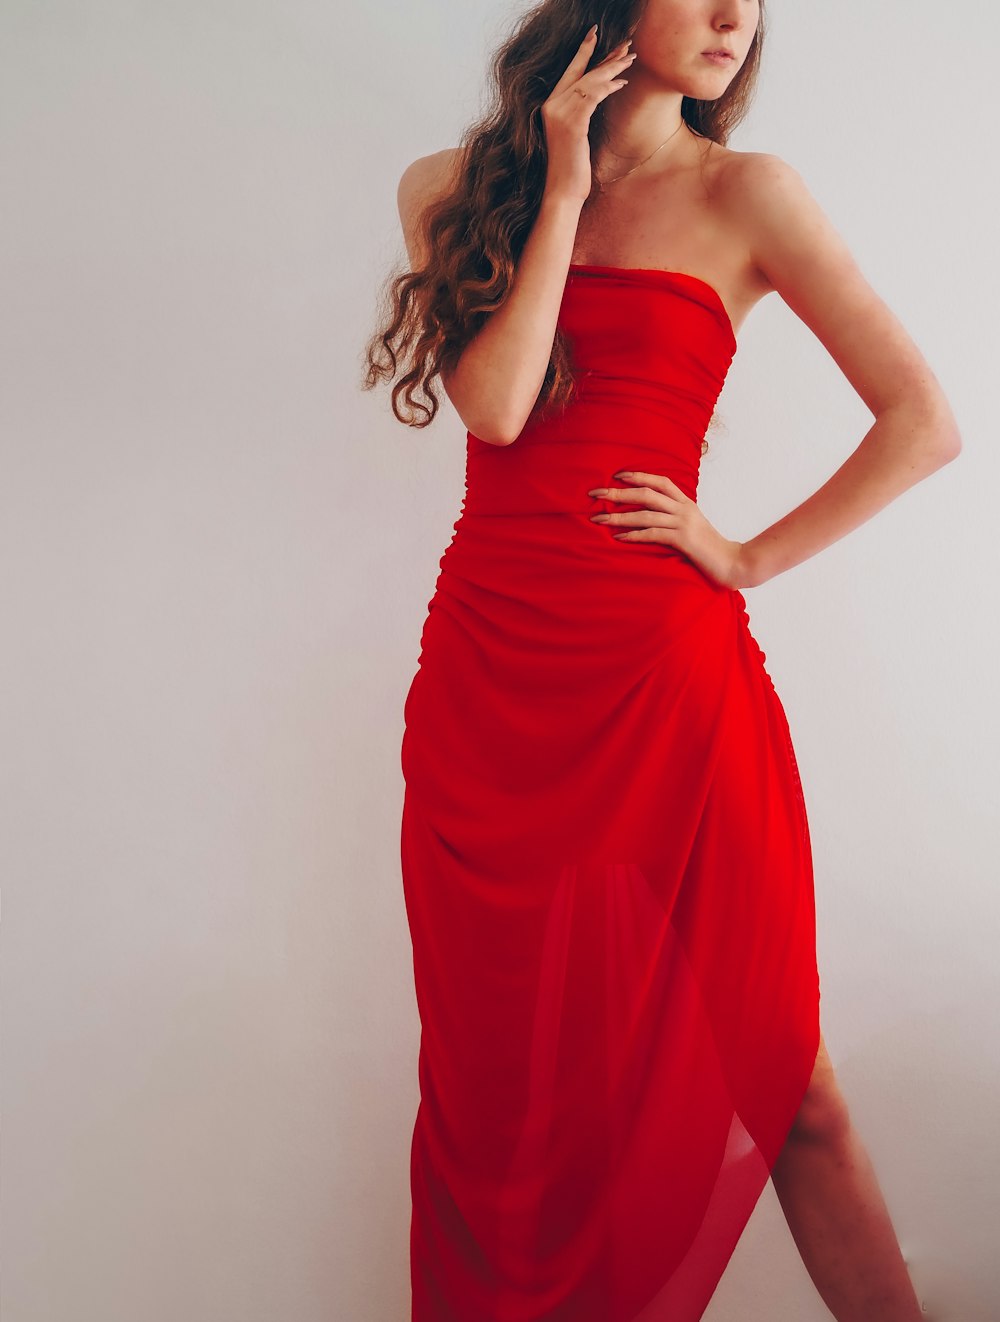 赤いチューブドレスの女性